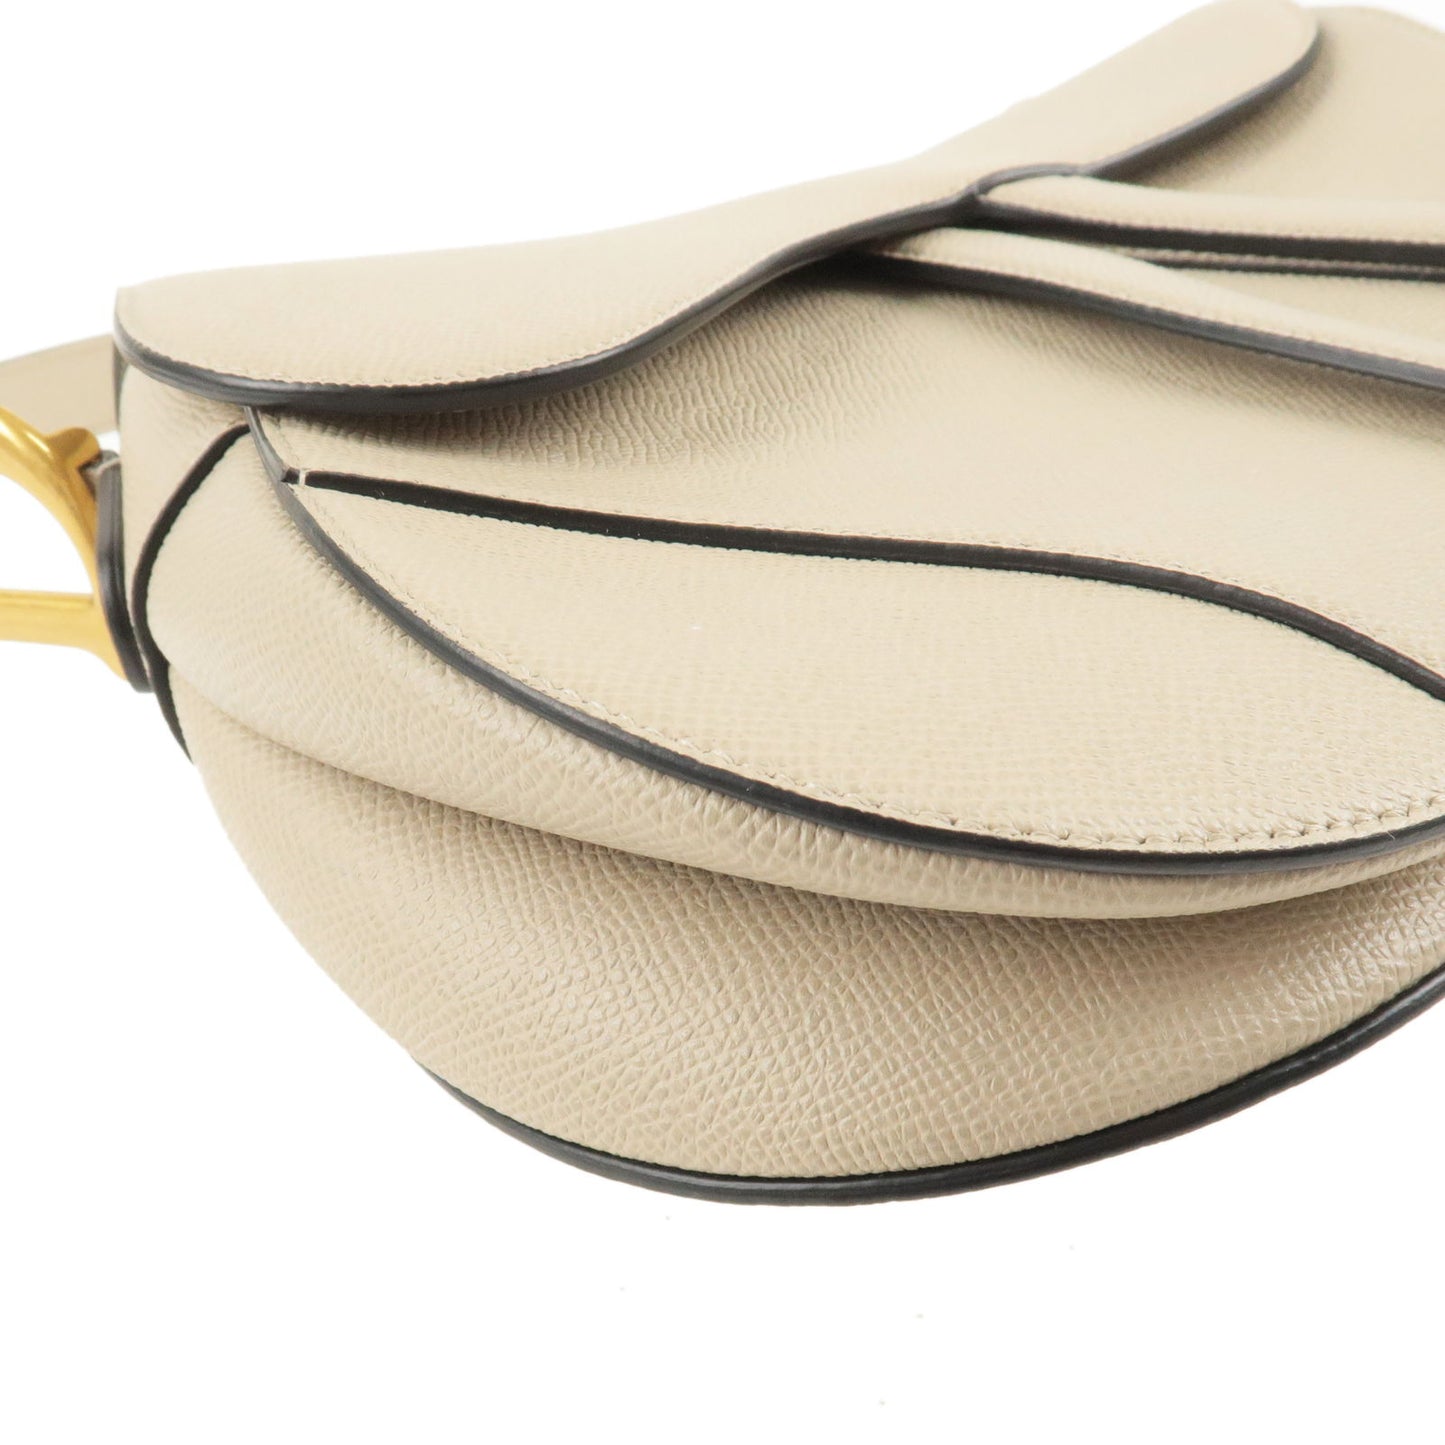 Christian Dior Leather Saddle Bag Shoulder Bag Purse Greige